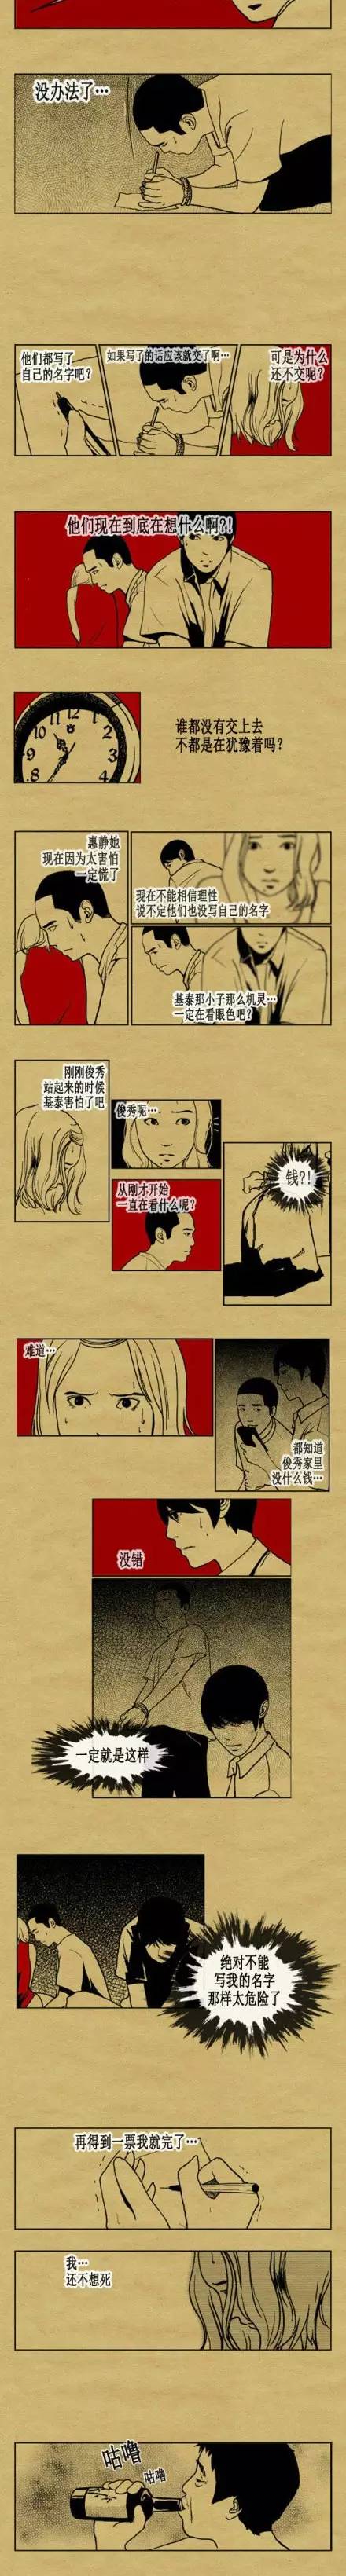 韩国人性漫画之《游戏的规则》